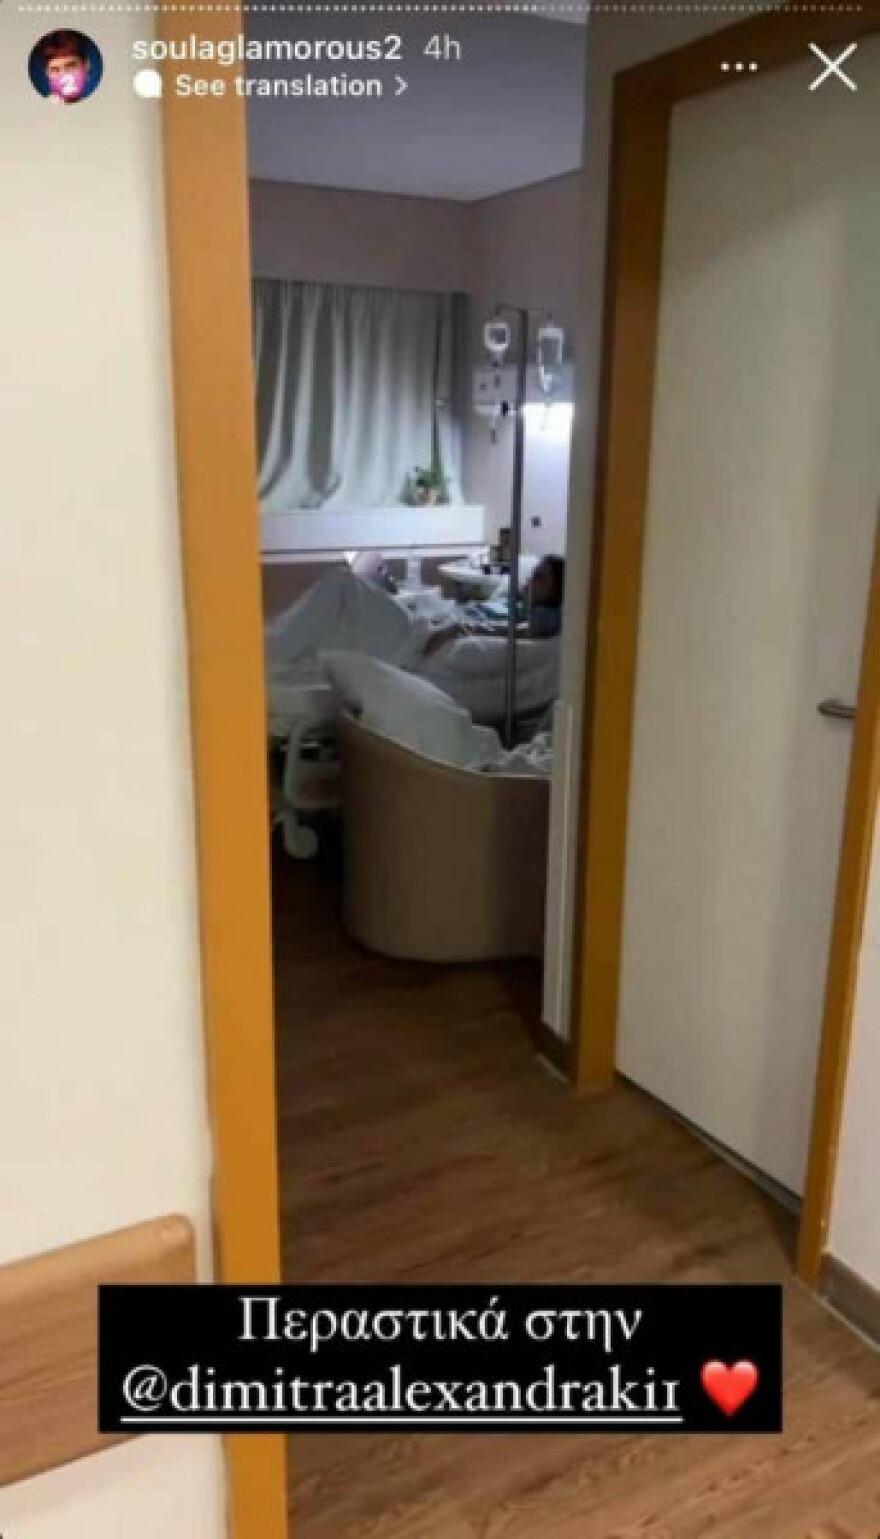 Δήμητρα Αλεξανδράκη: Δακρυσμένη μέσα από το νοσοκομείο – Τα νεότερα για την πορεία της υγείας της